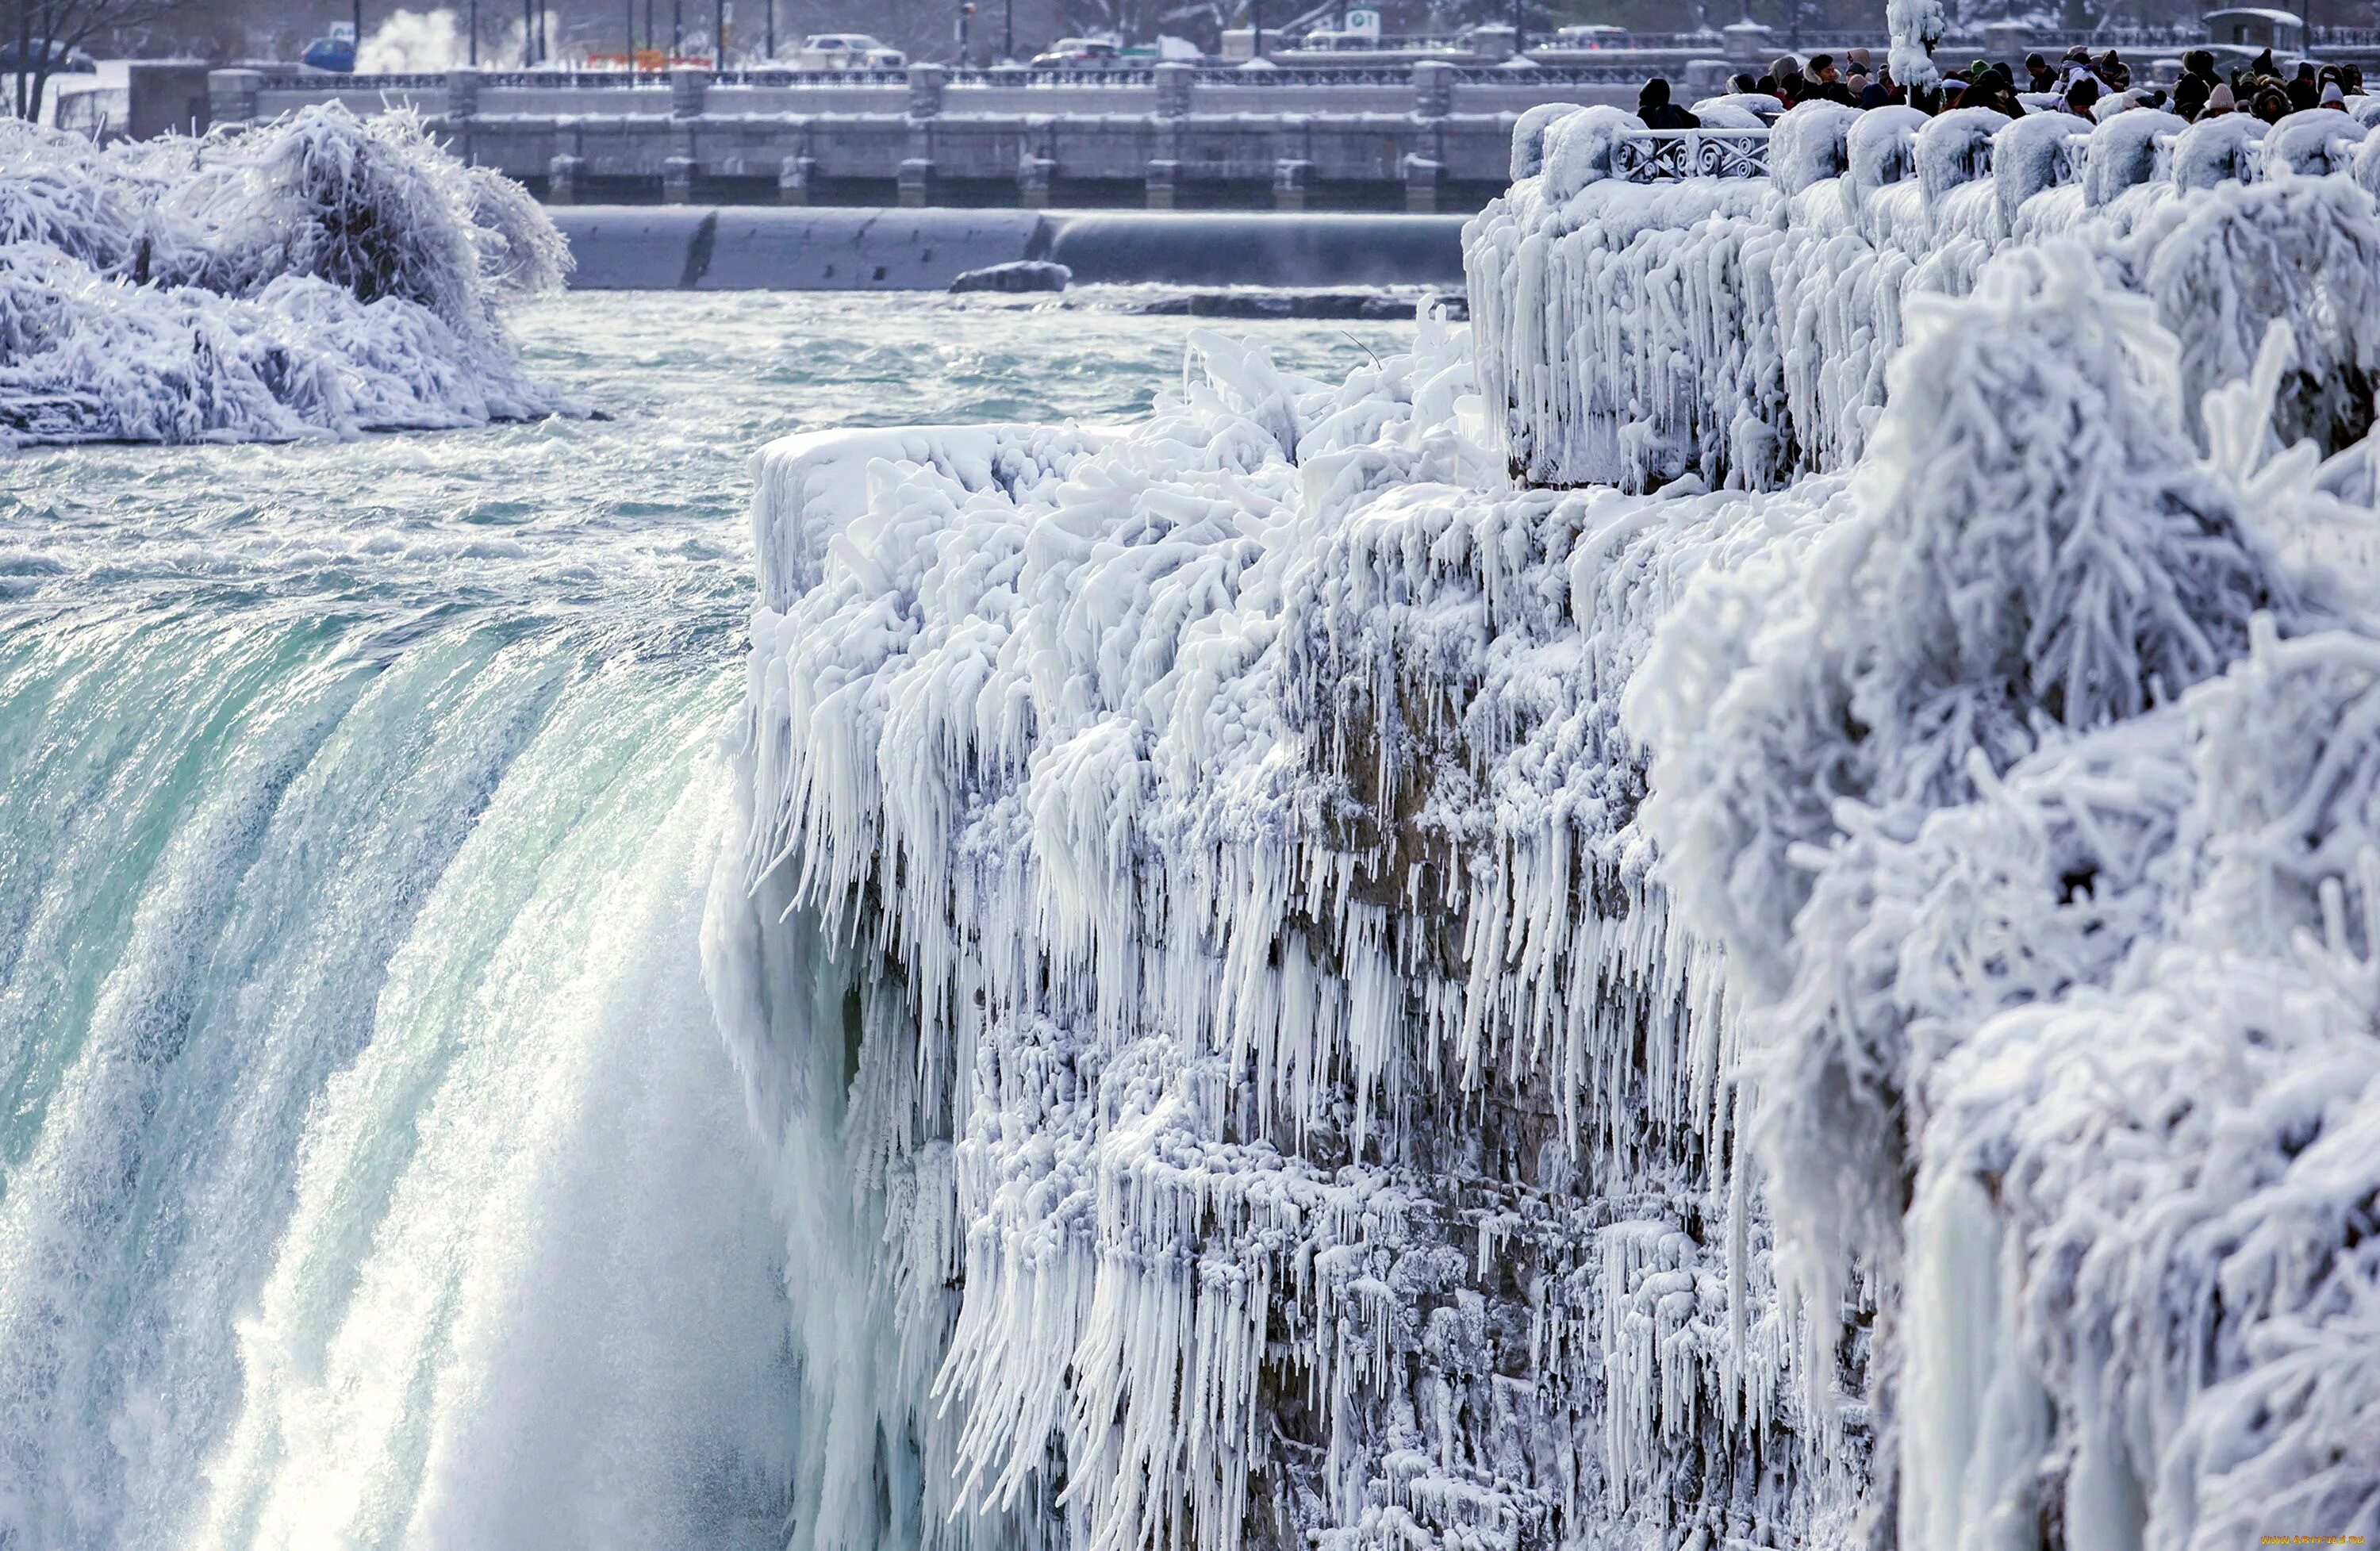 Ниагарский водопад замерз. Ниагарский водопад Канада. Ниагарский водопад (штат Нью-Йорк). Ниагарский водопад зимой. Грустный лед